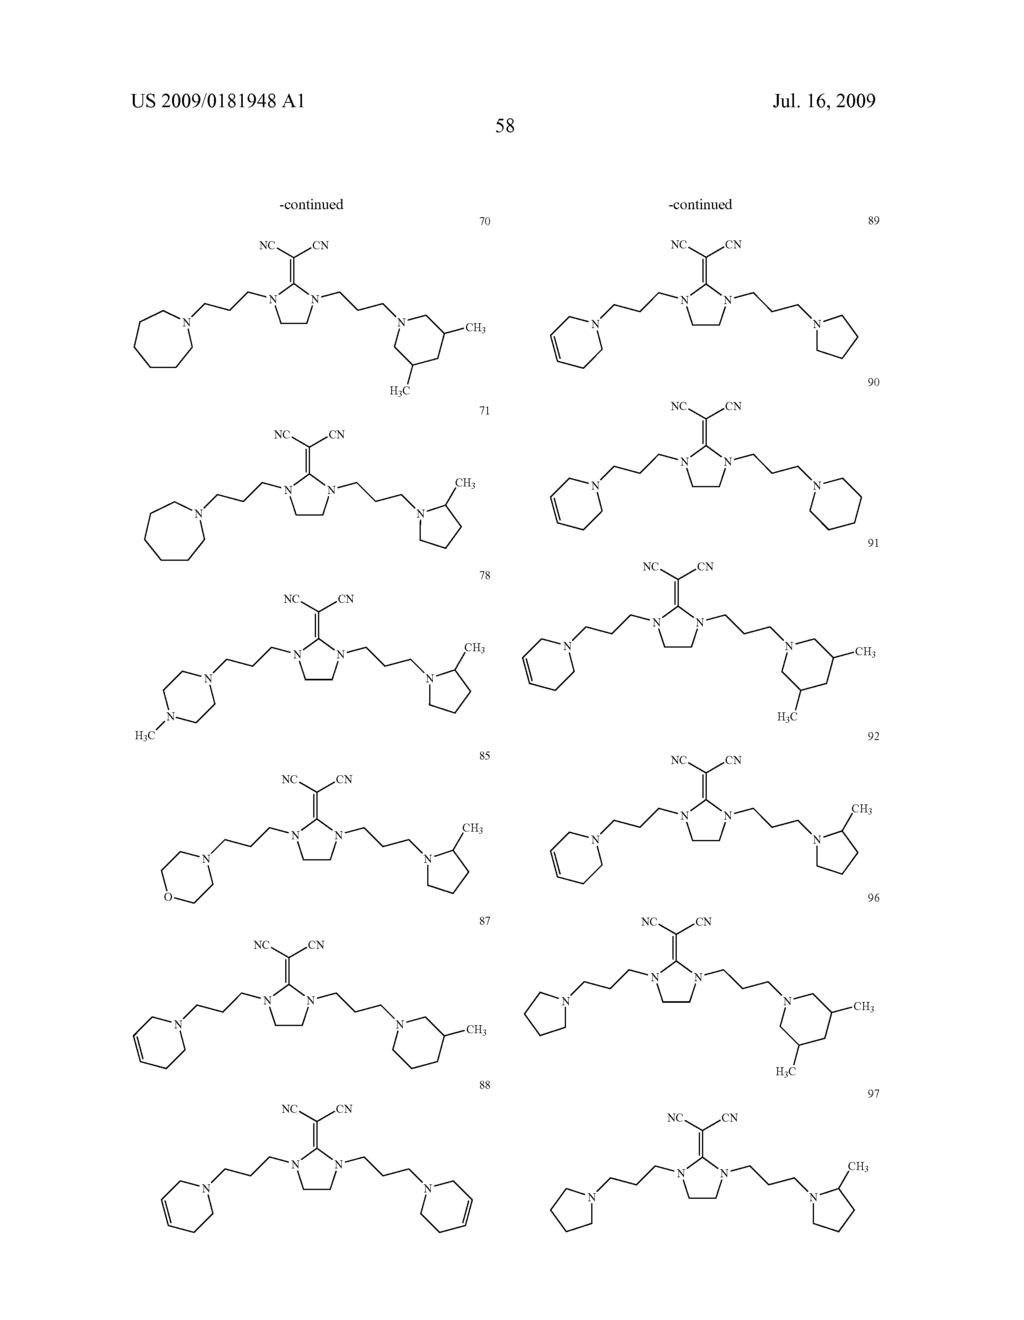 DIAMINE DERIVATIVE - diagram, schematic, and image 59